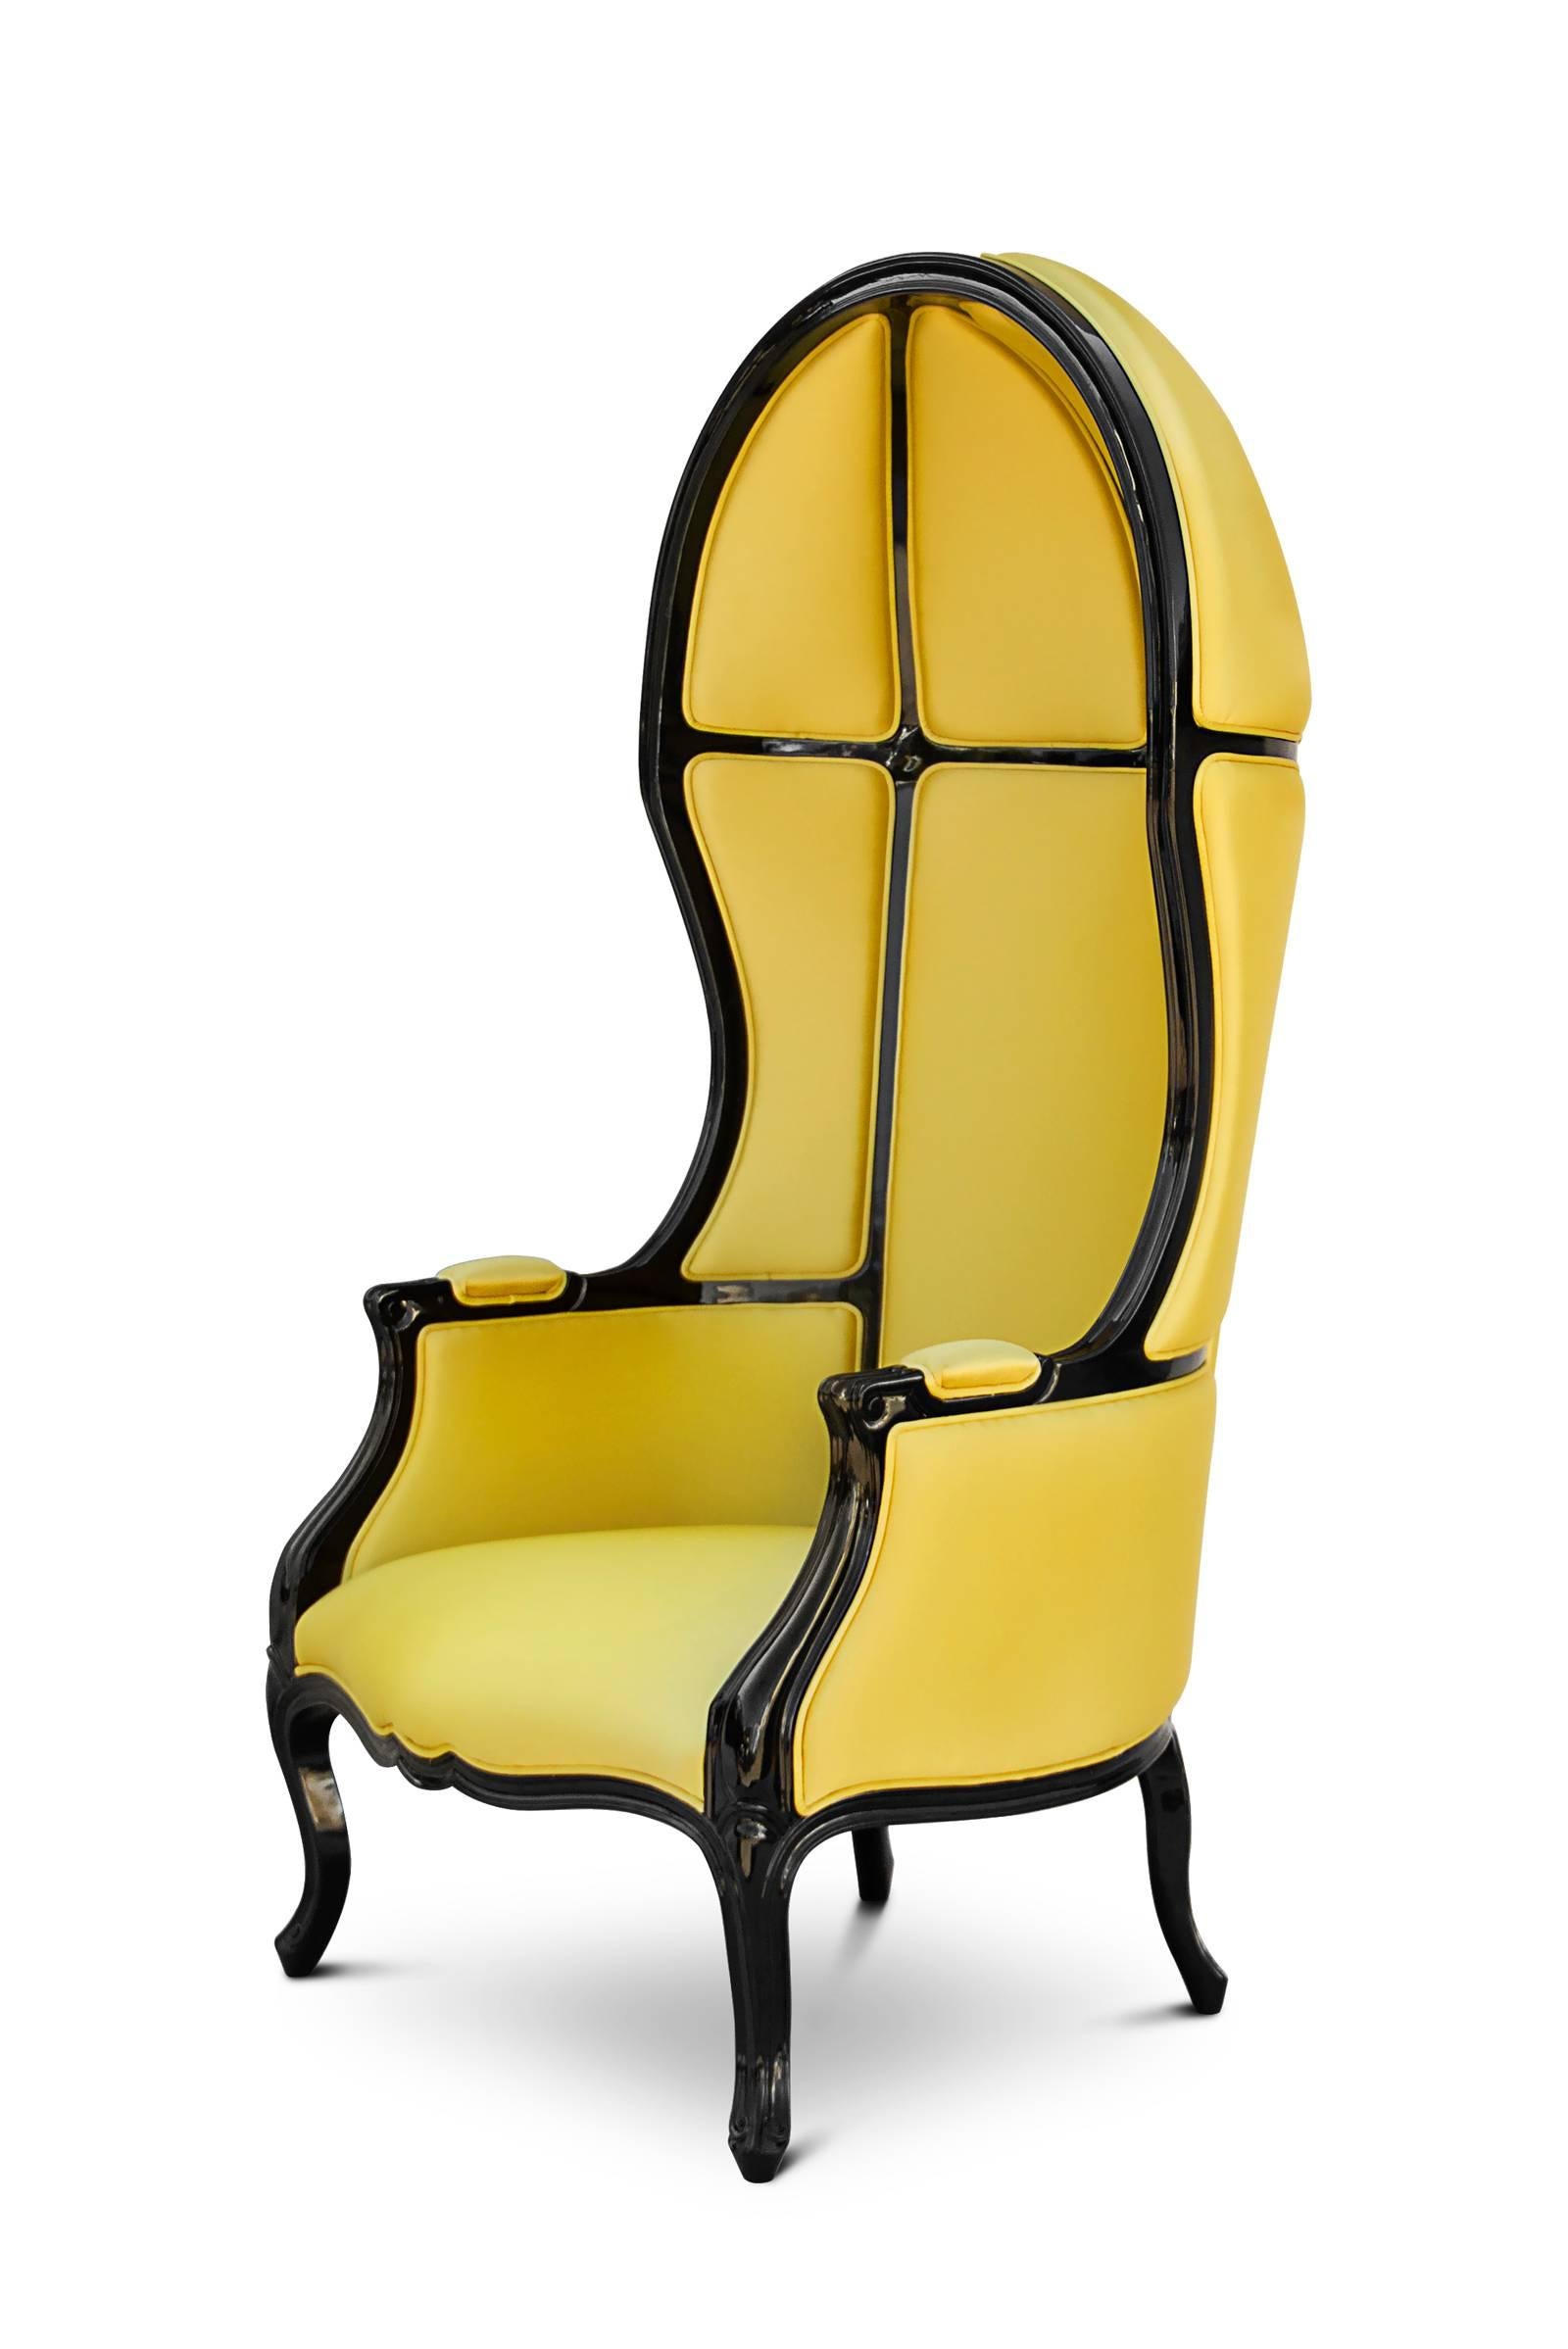 Sessel tresor mit Hochglanz schwarz lackiert 
struktur und Gewebe aus satinierter Baumwolle.
Erhältlich in Gelb, Blau, Rot, Orange, Fushia und Grün.
